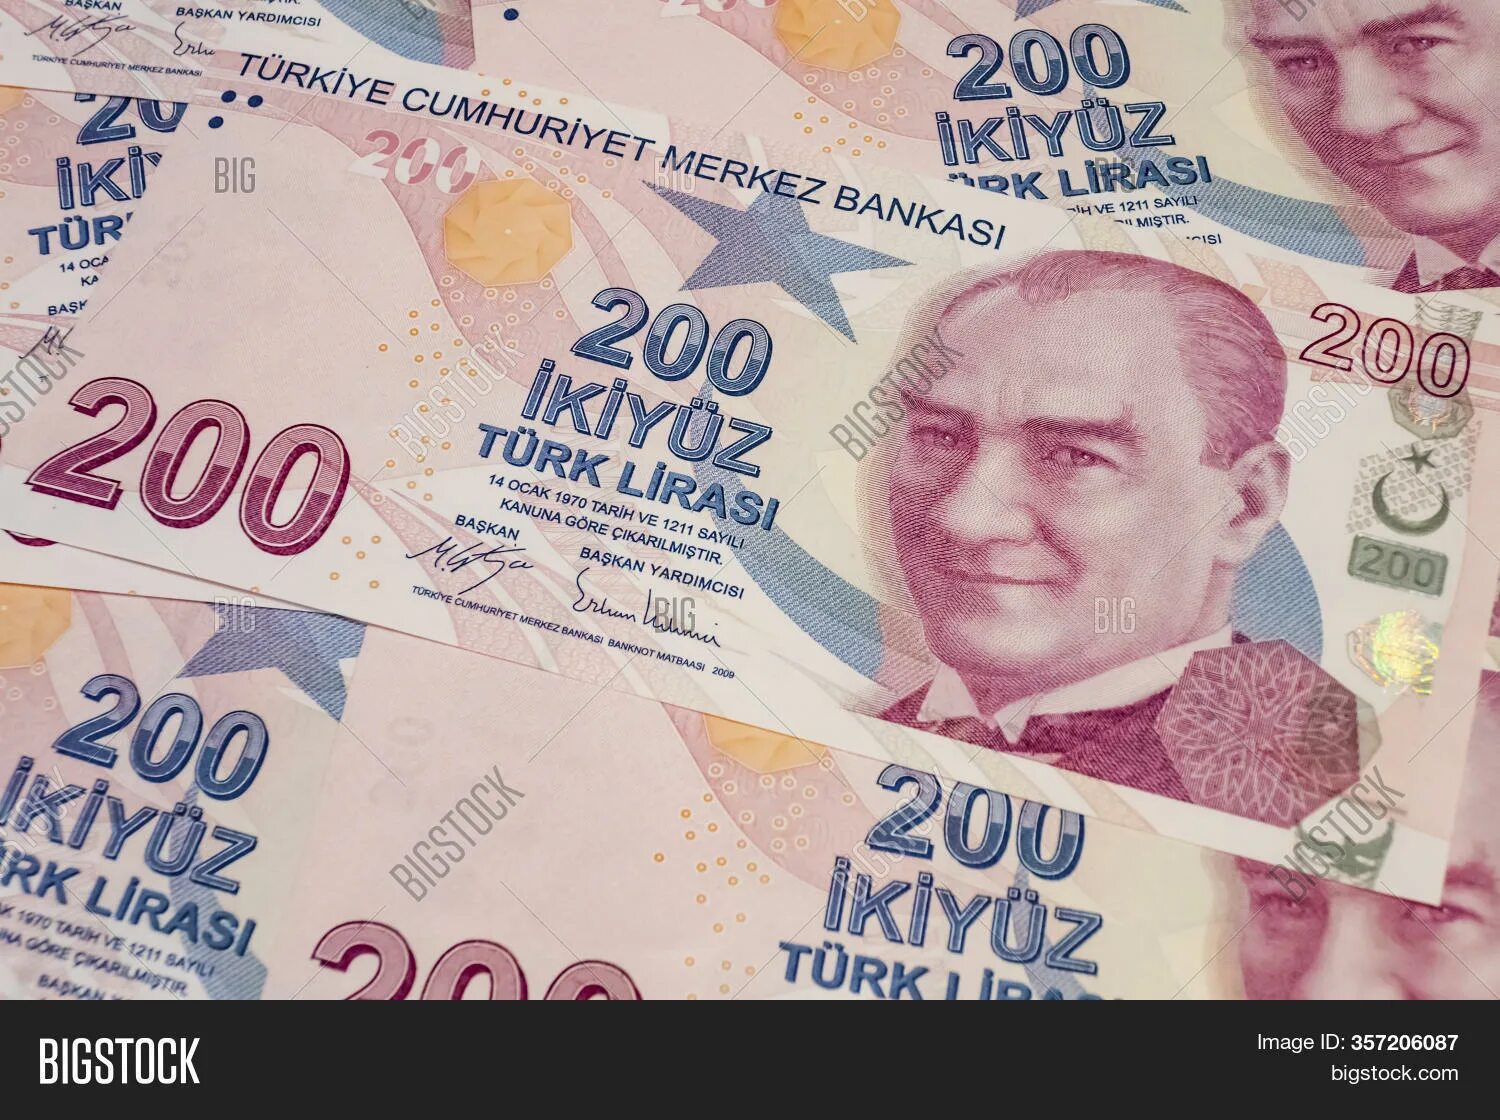 1700 лир. 200 Турецких лир. 1700 Лир в рублях на сегодня. 200 Лир бумажные человек на Бушке.